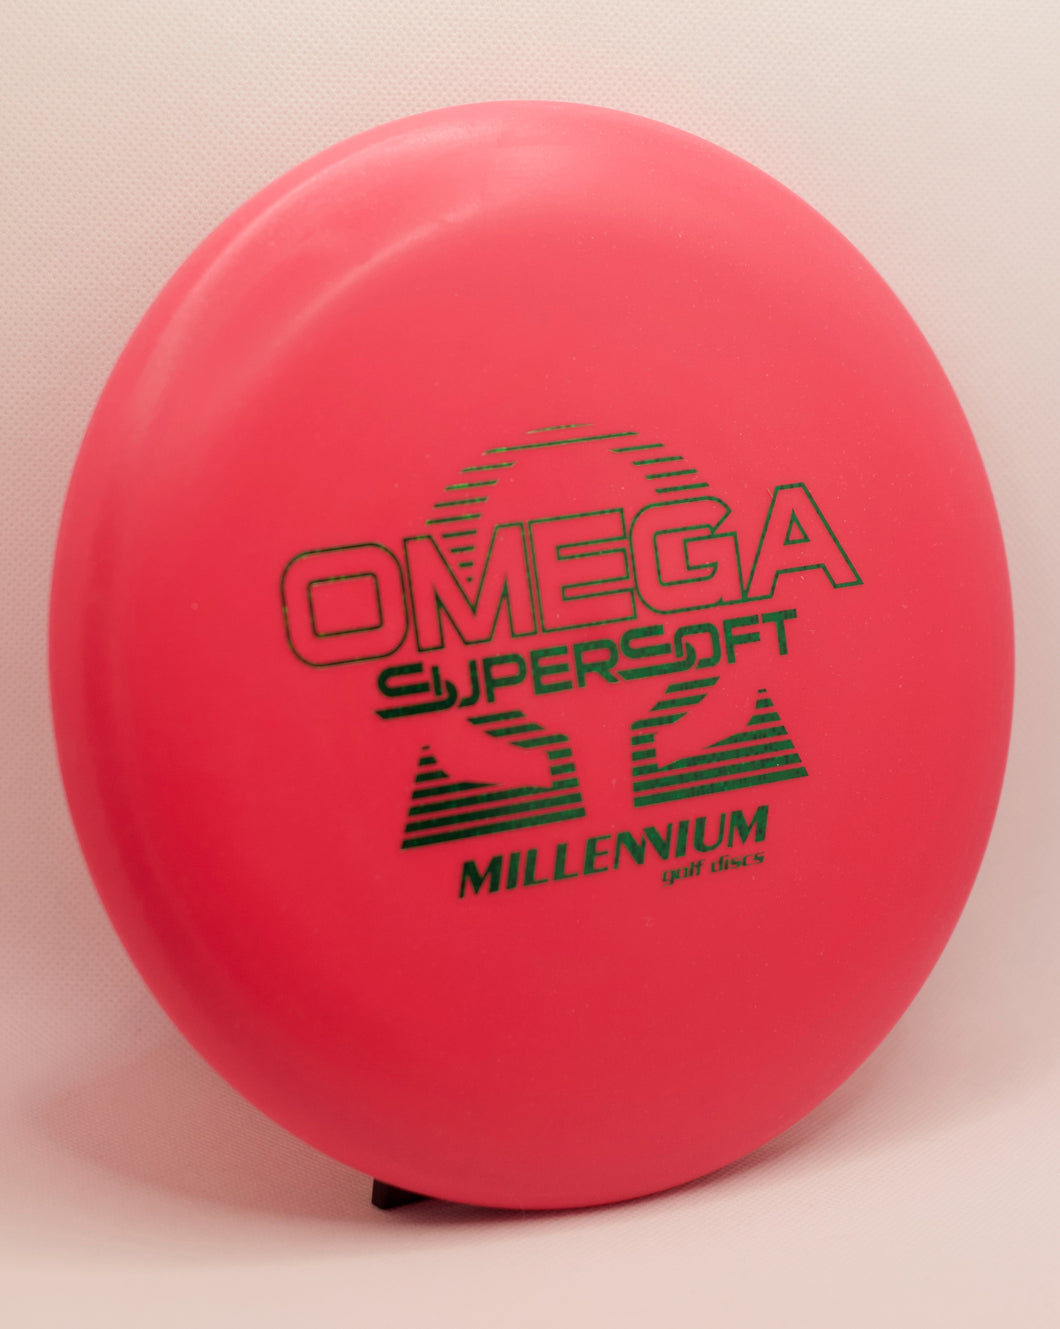 Millennium Supersoft Omega Putt/Approach